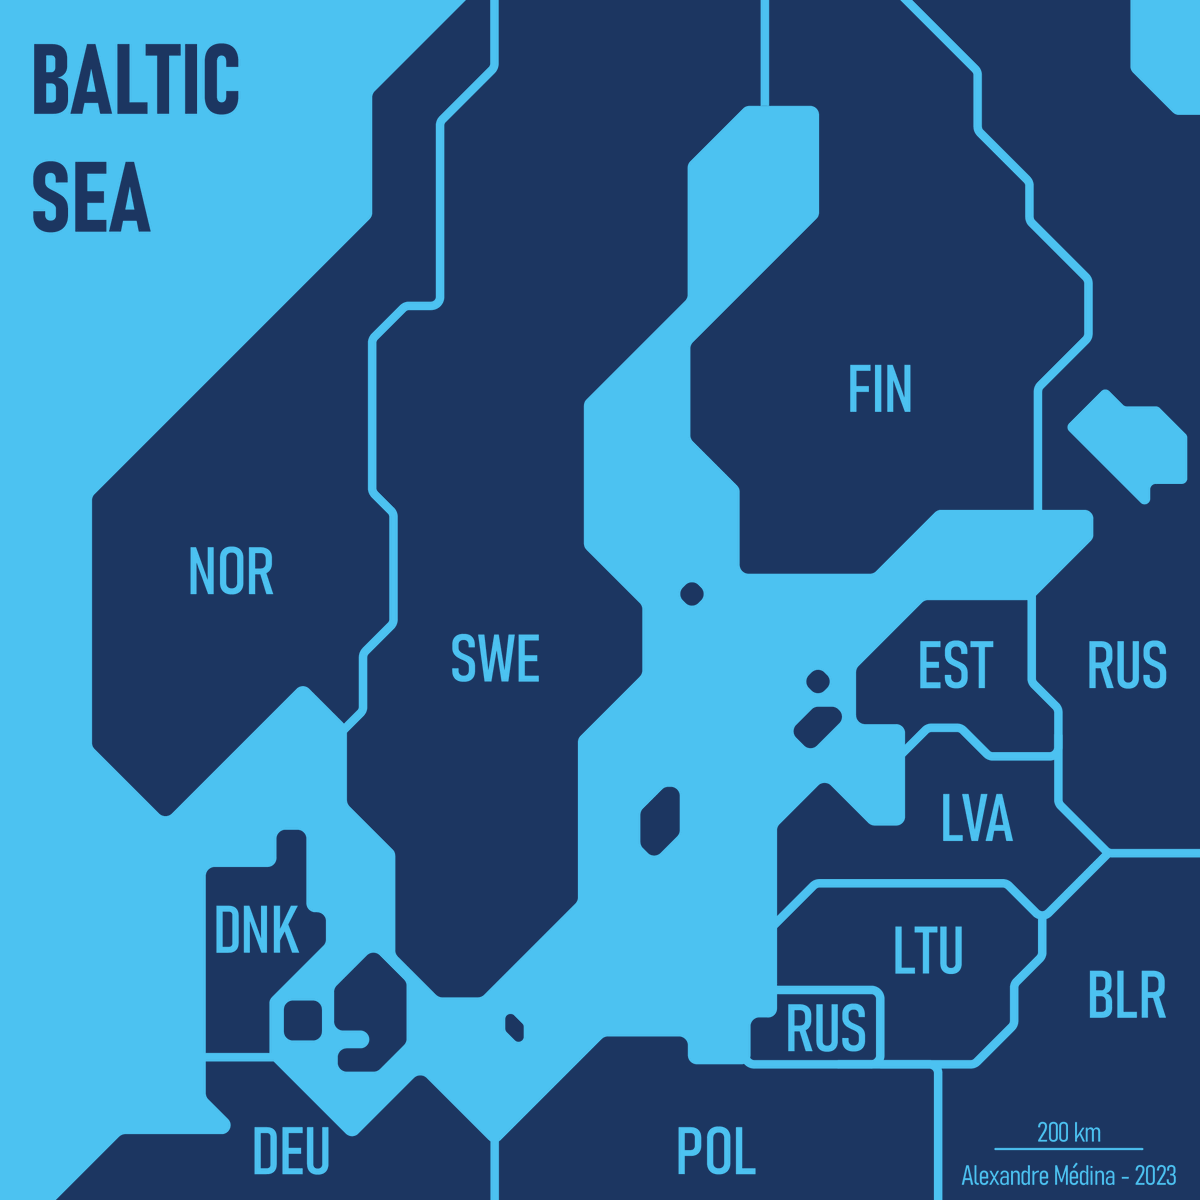 #30daymapchallenge JOUR 26 - 'Minimaliste' 🌍 La mer Baltique 🌊 #Cartographie #Carte #Map #Europe #Baltique